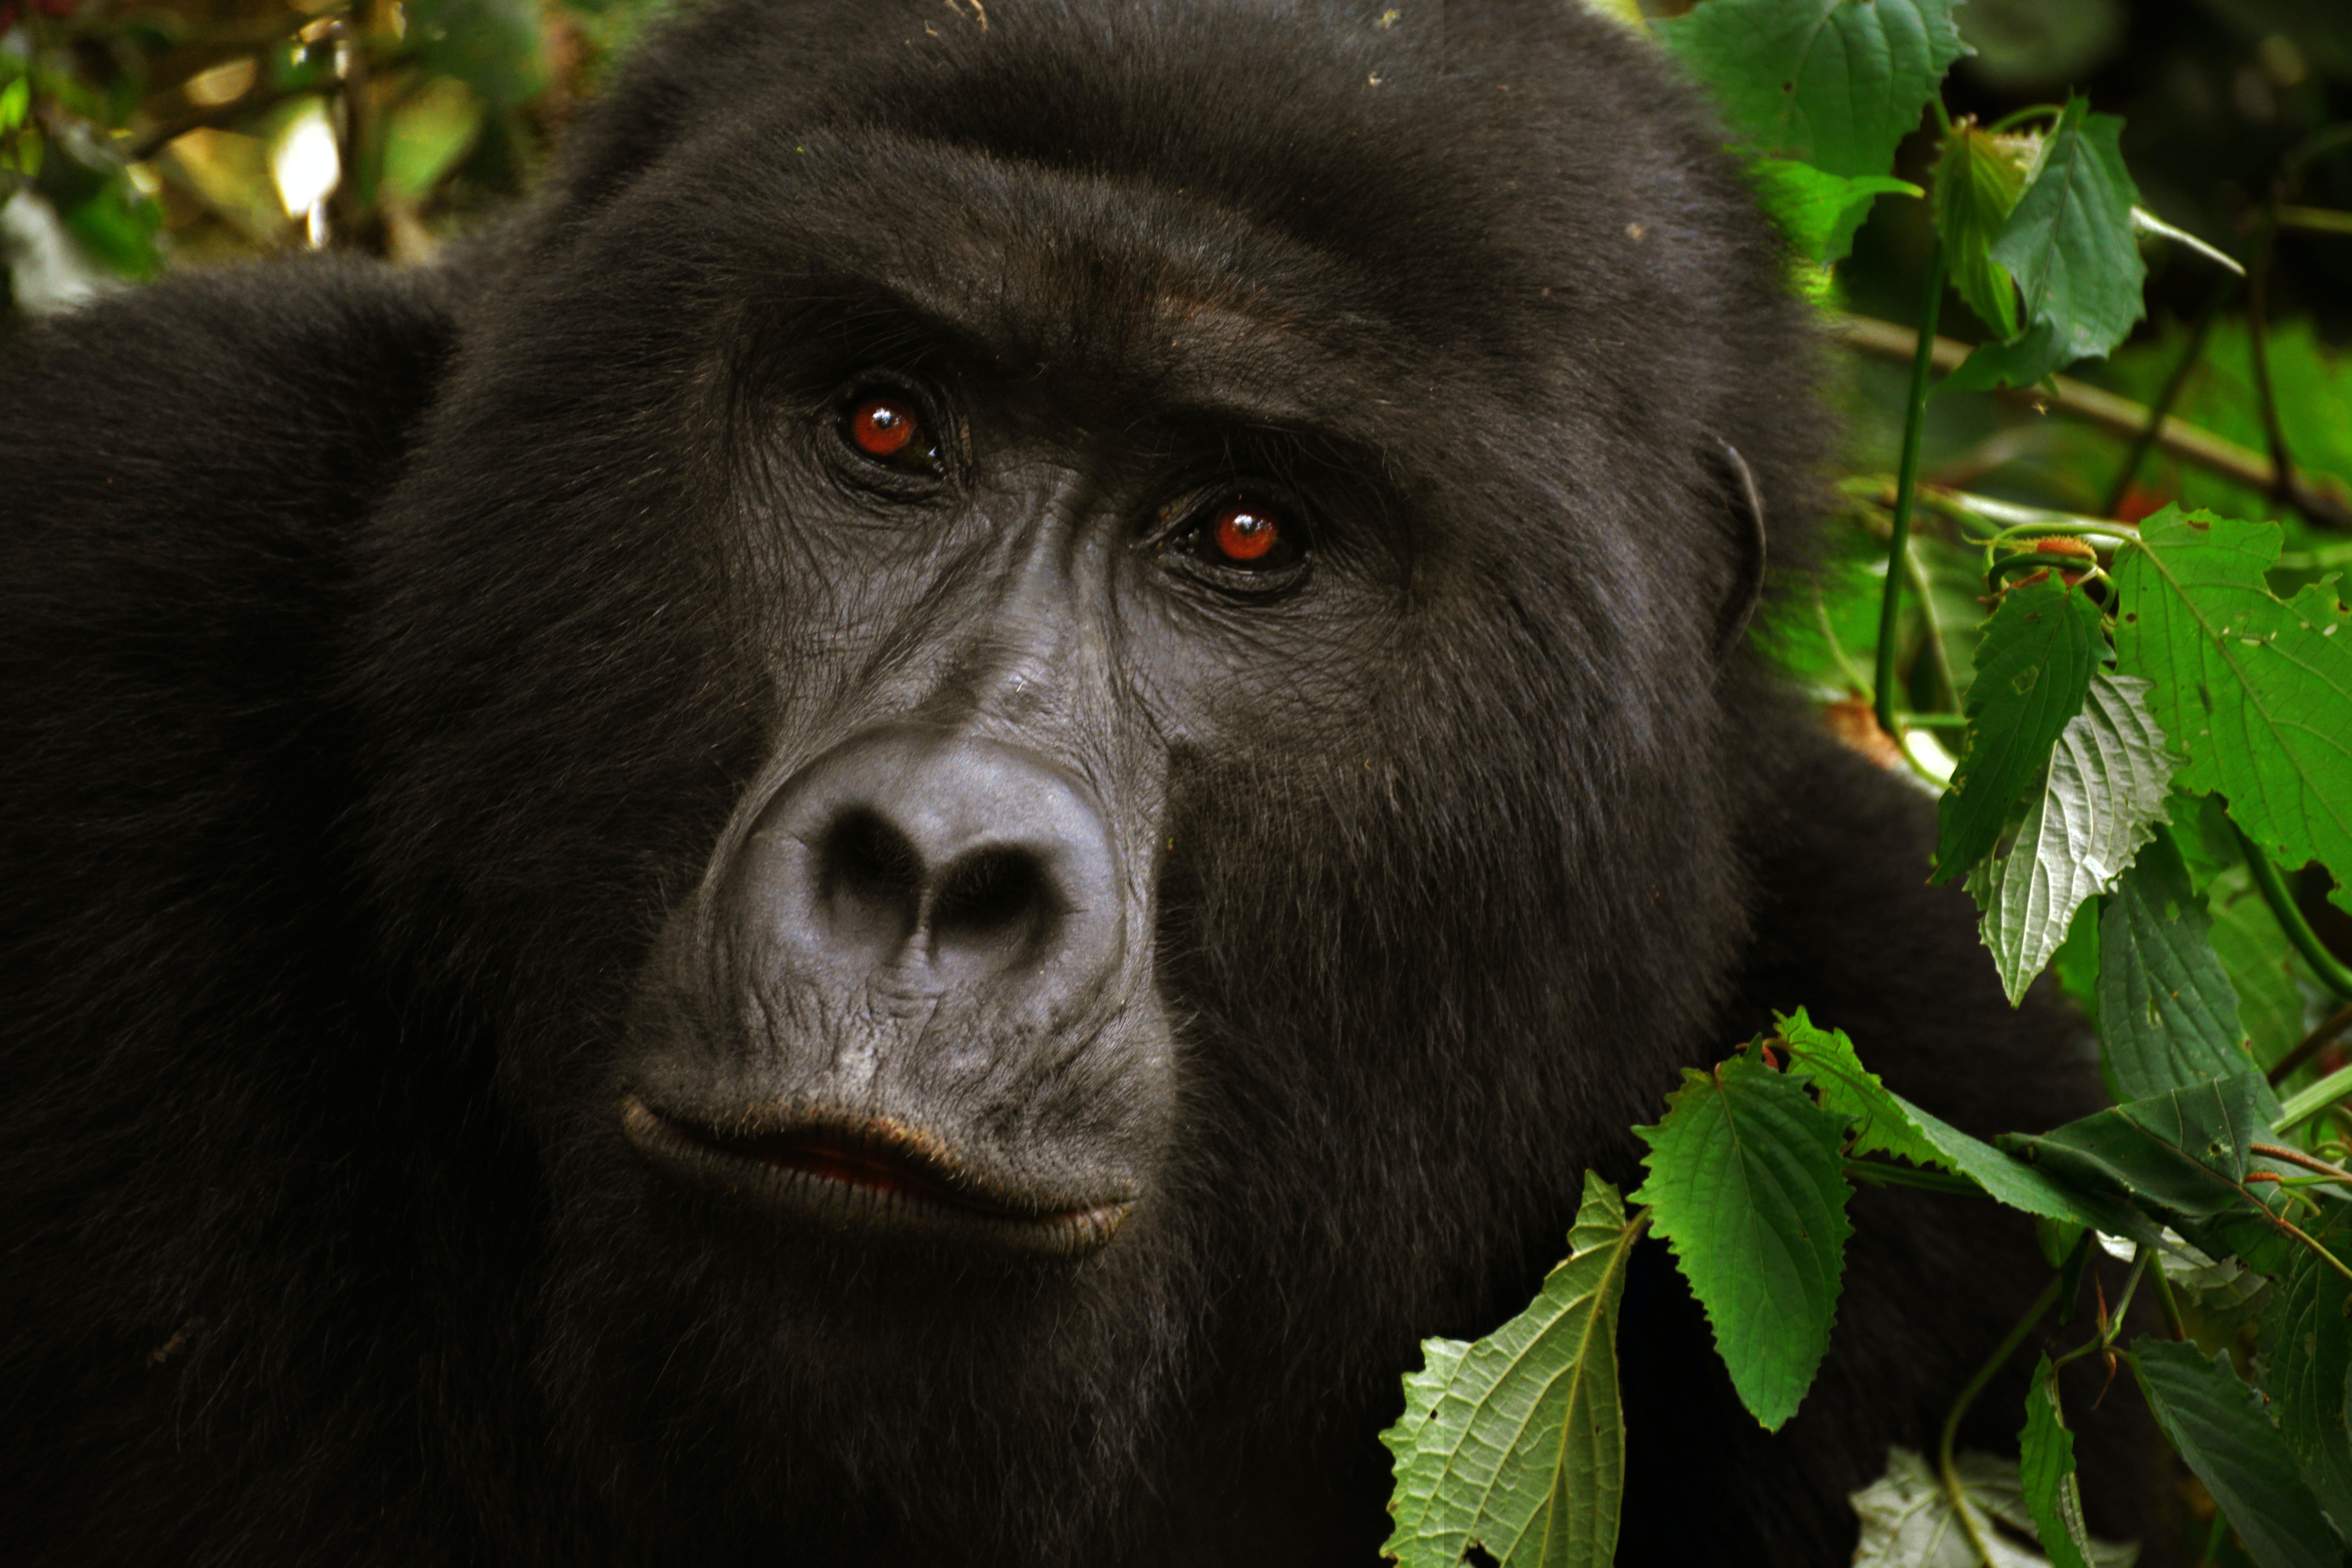 Ein Gorilla mit roten Augen. | Quelle: Pexels/ The World Hopper